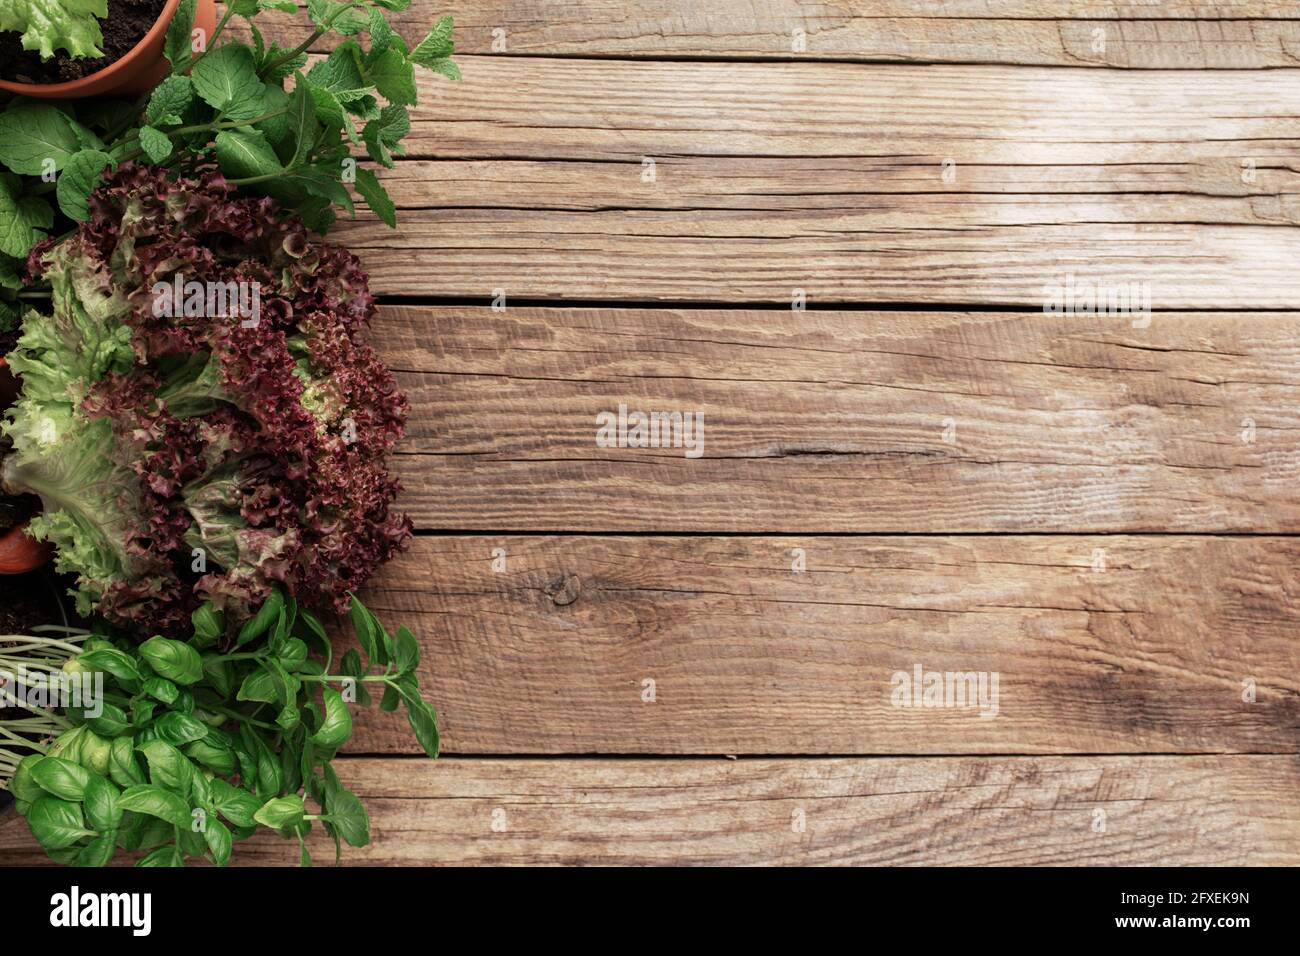 Gartenarbeit und gesundes Esskonzept mit verschiedenen Kräutern und Salat Blätter auf Holzhintergrund Stockfoto